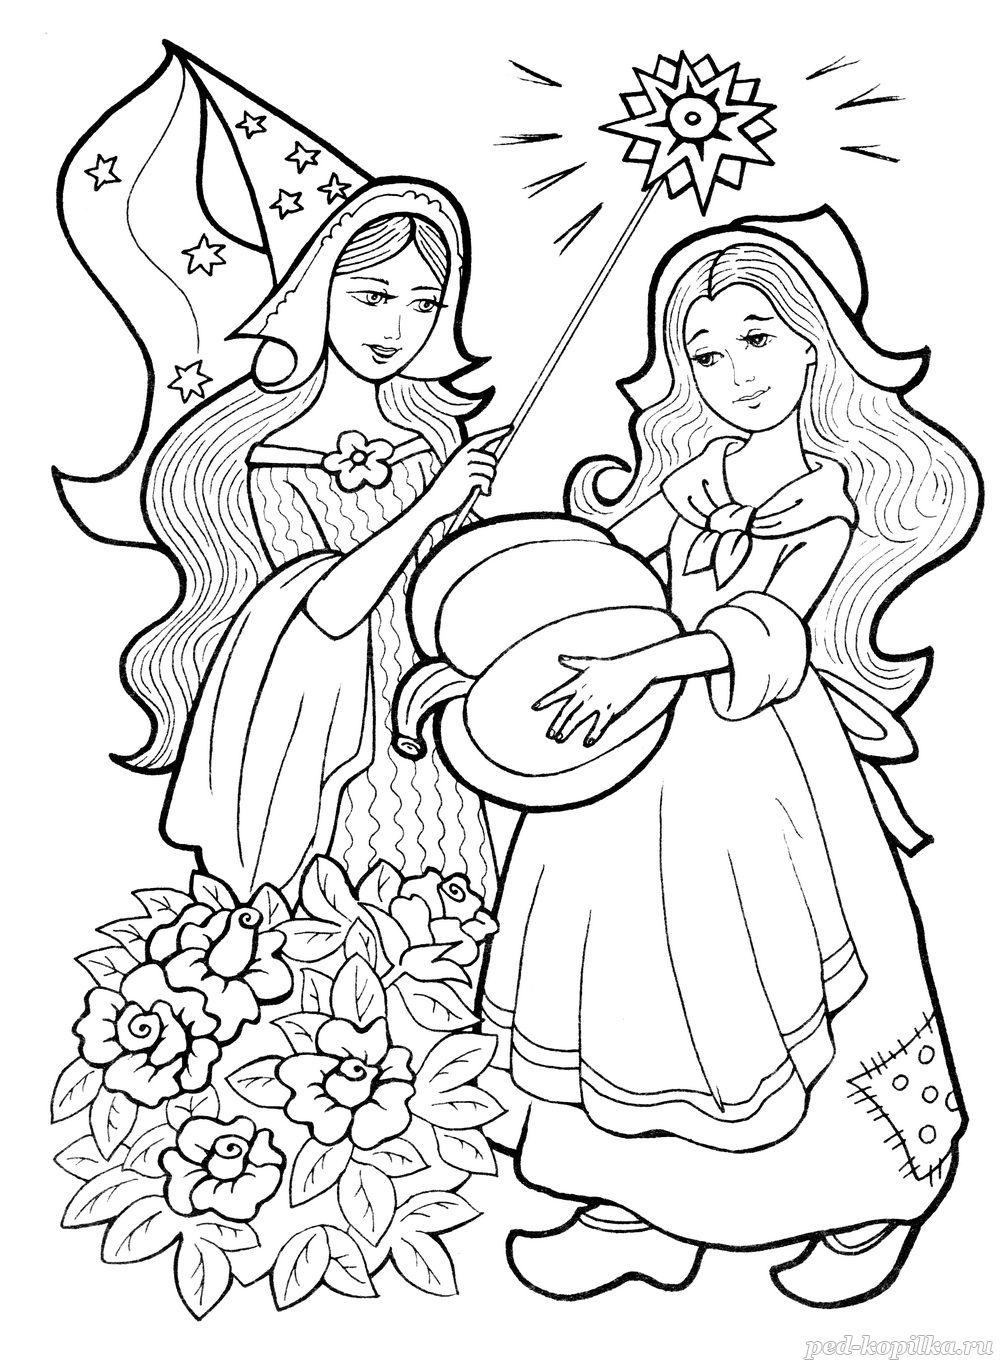 Розмальовки розмальовки для дітей за казками Попелюшка і чарівниця з гарбузом в руці чарівна паличка